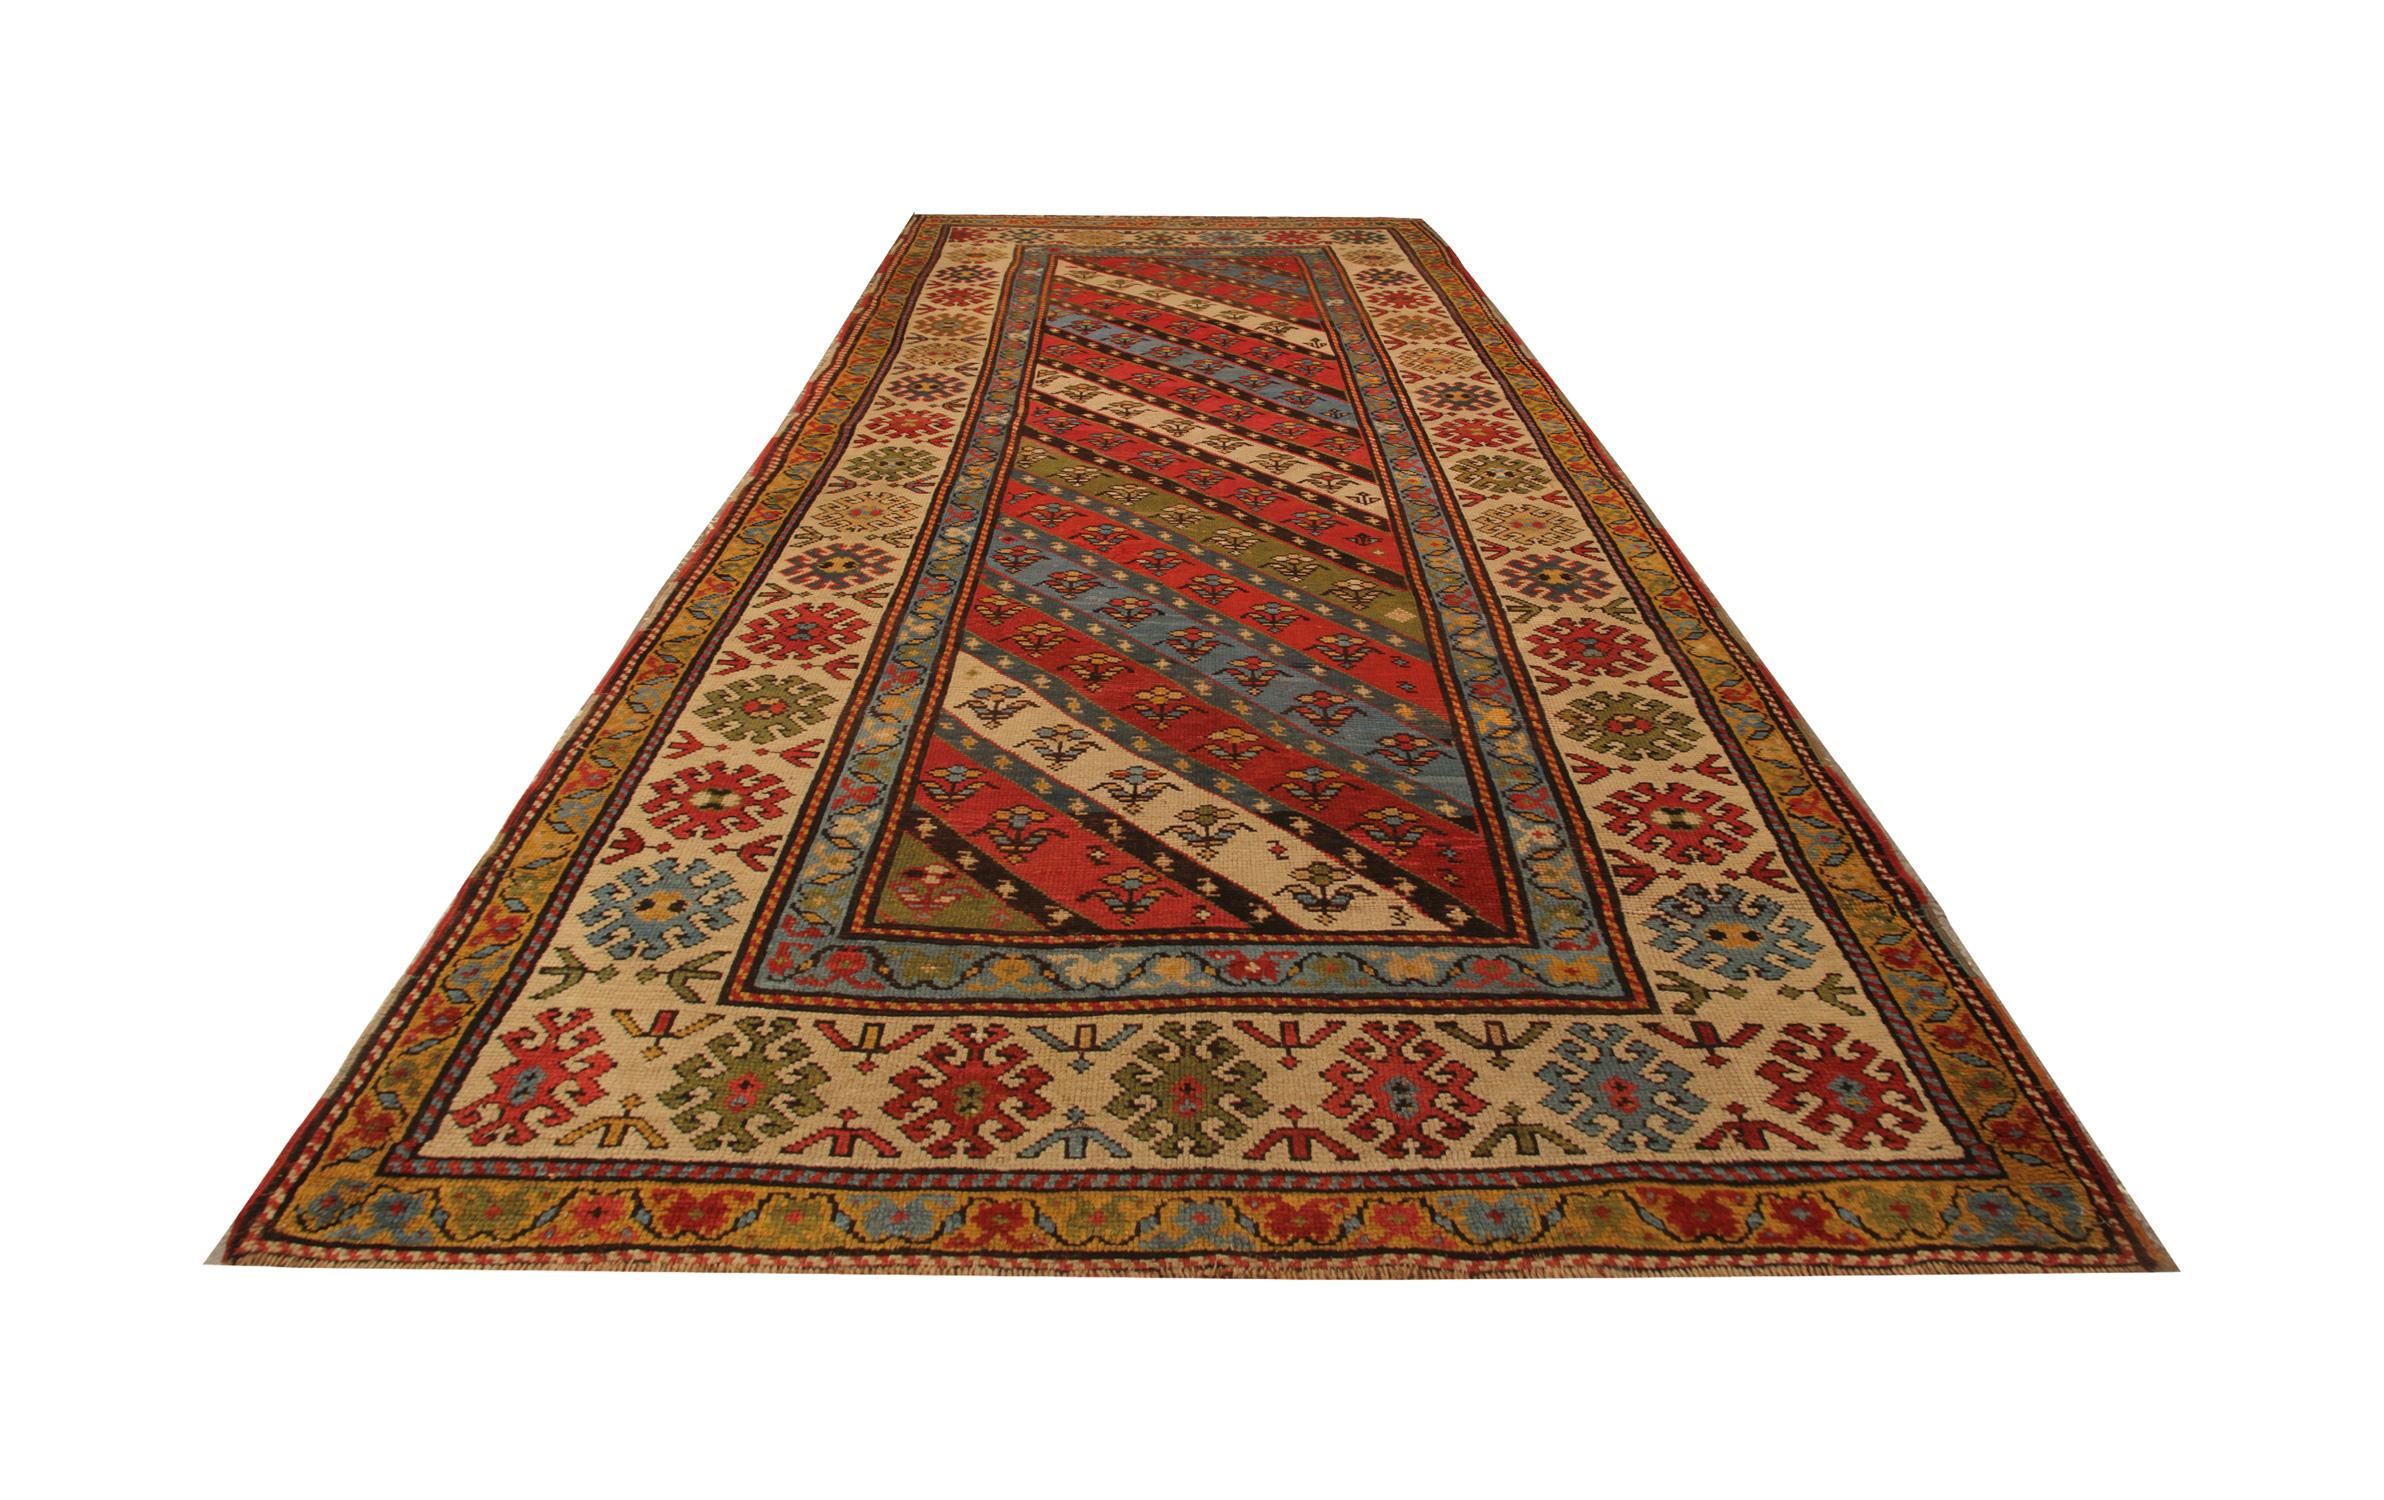 Tauchen Sie ein in die Geschichte mit unserem seltenen antiken Teppich, einem fesselnden Stück Handwerkskunst aus der Kaukasusregion. Dieses orientalische Meisterwerk, das in den 1880er Jahren mit großer Sorgfalt handgeknüpft wurde, befindet sich in